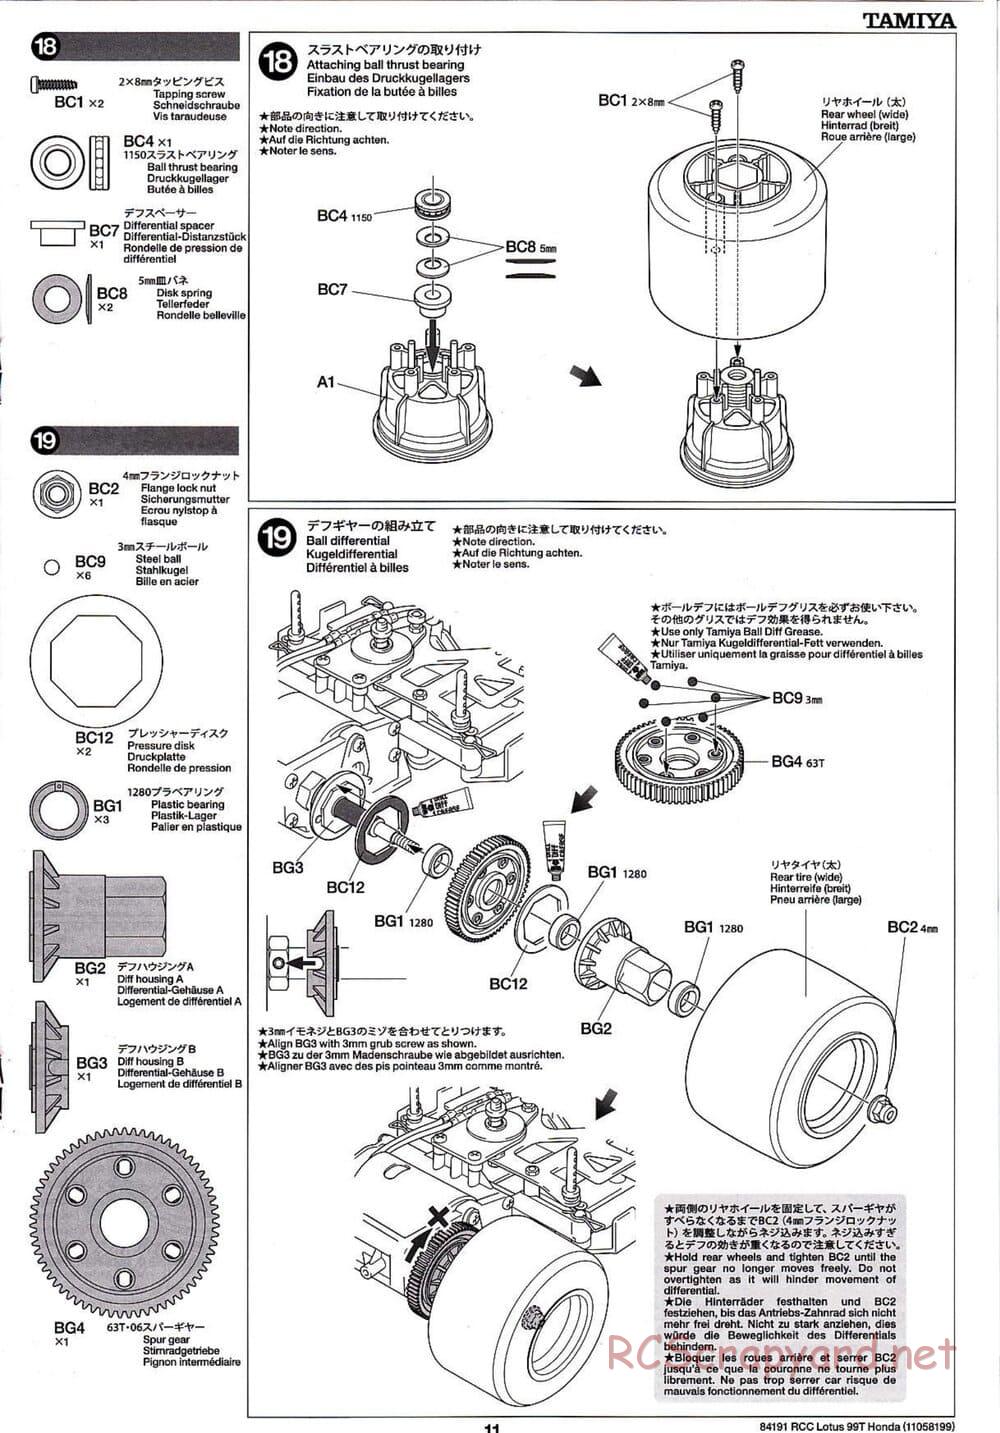 Tamiya - Team Lotus 99T Honda - F103 Chassis - Manual - Page 11